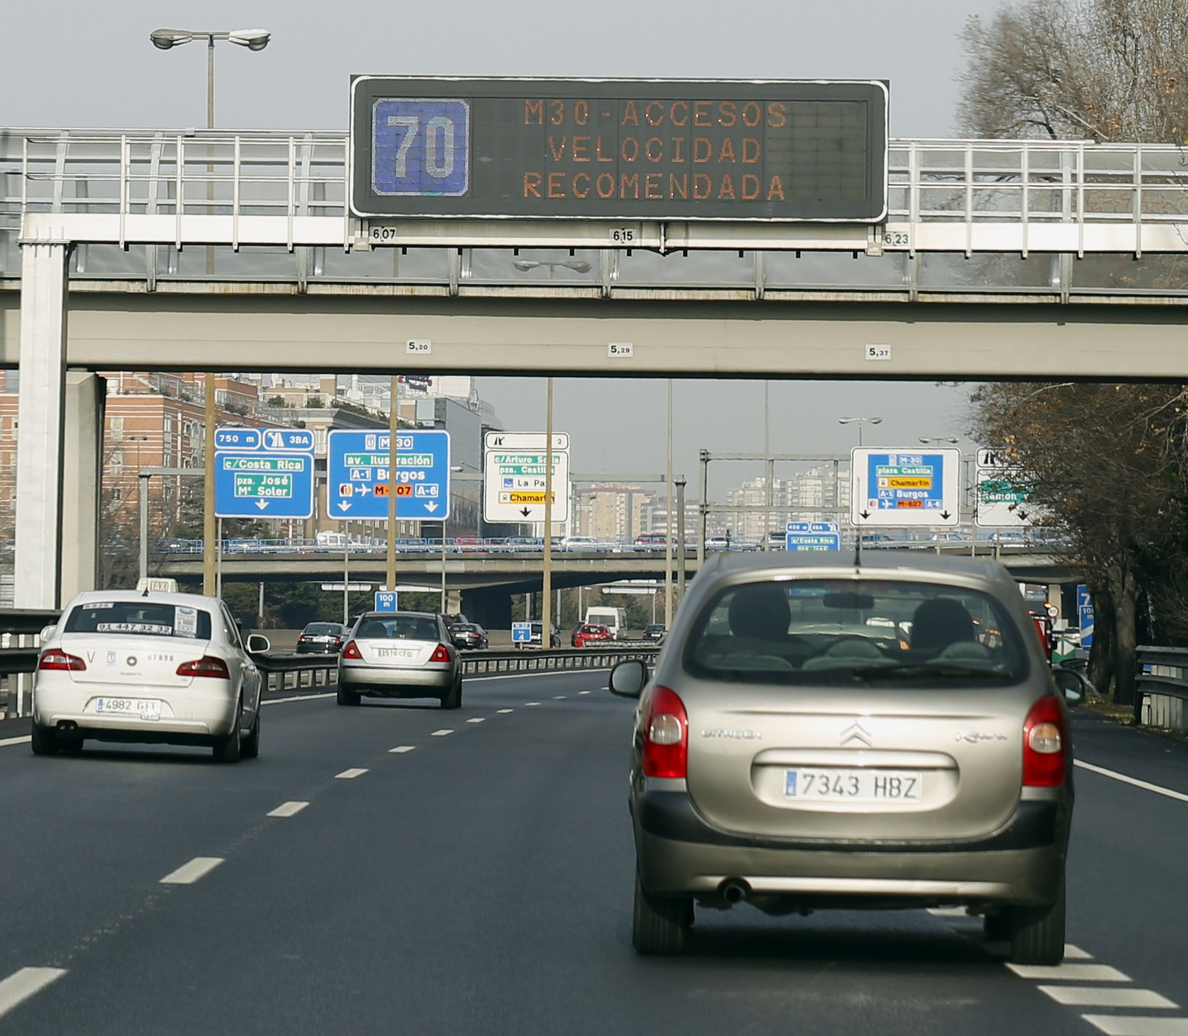 Mañana no se podrá aparcar en el centro de Madrid ni circular a más de 70 km/h